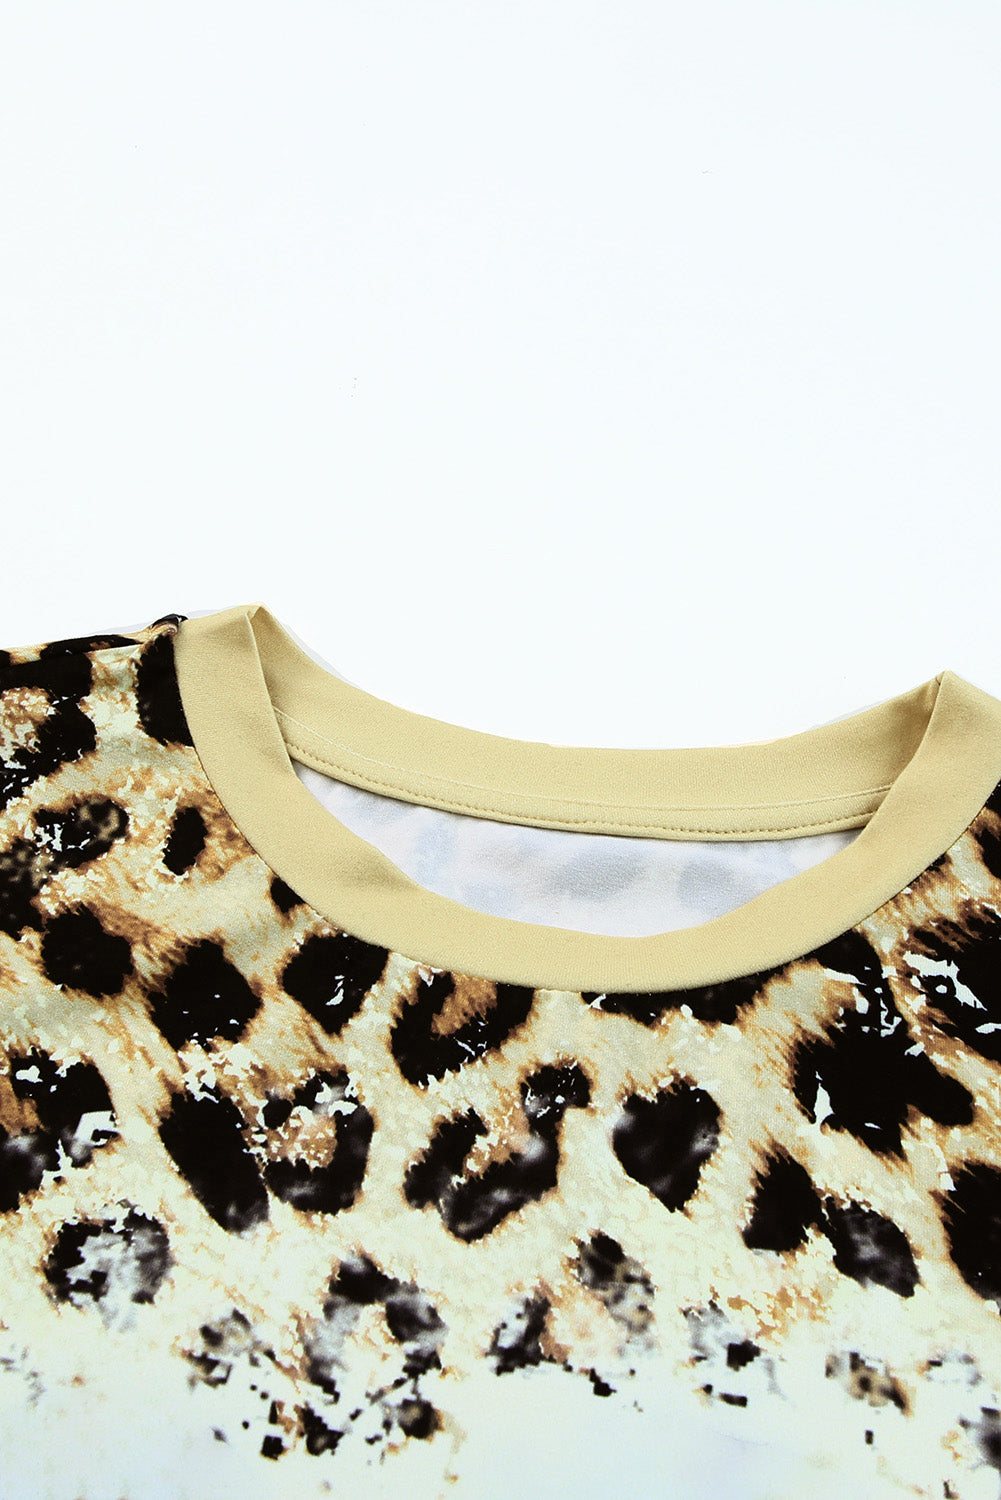 Leopard izbijeljena majica s O izrezom